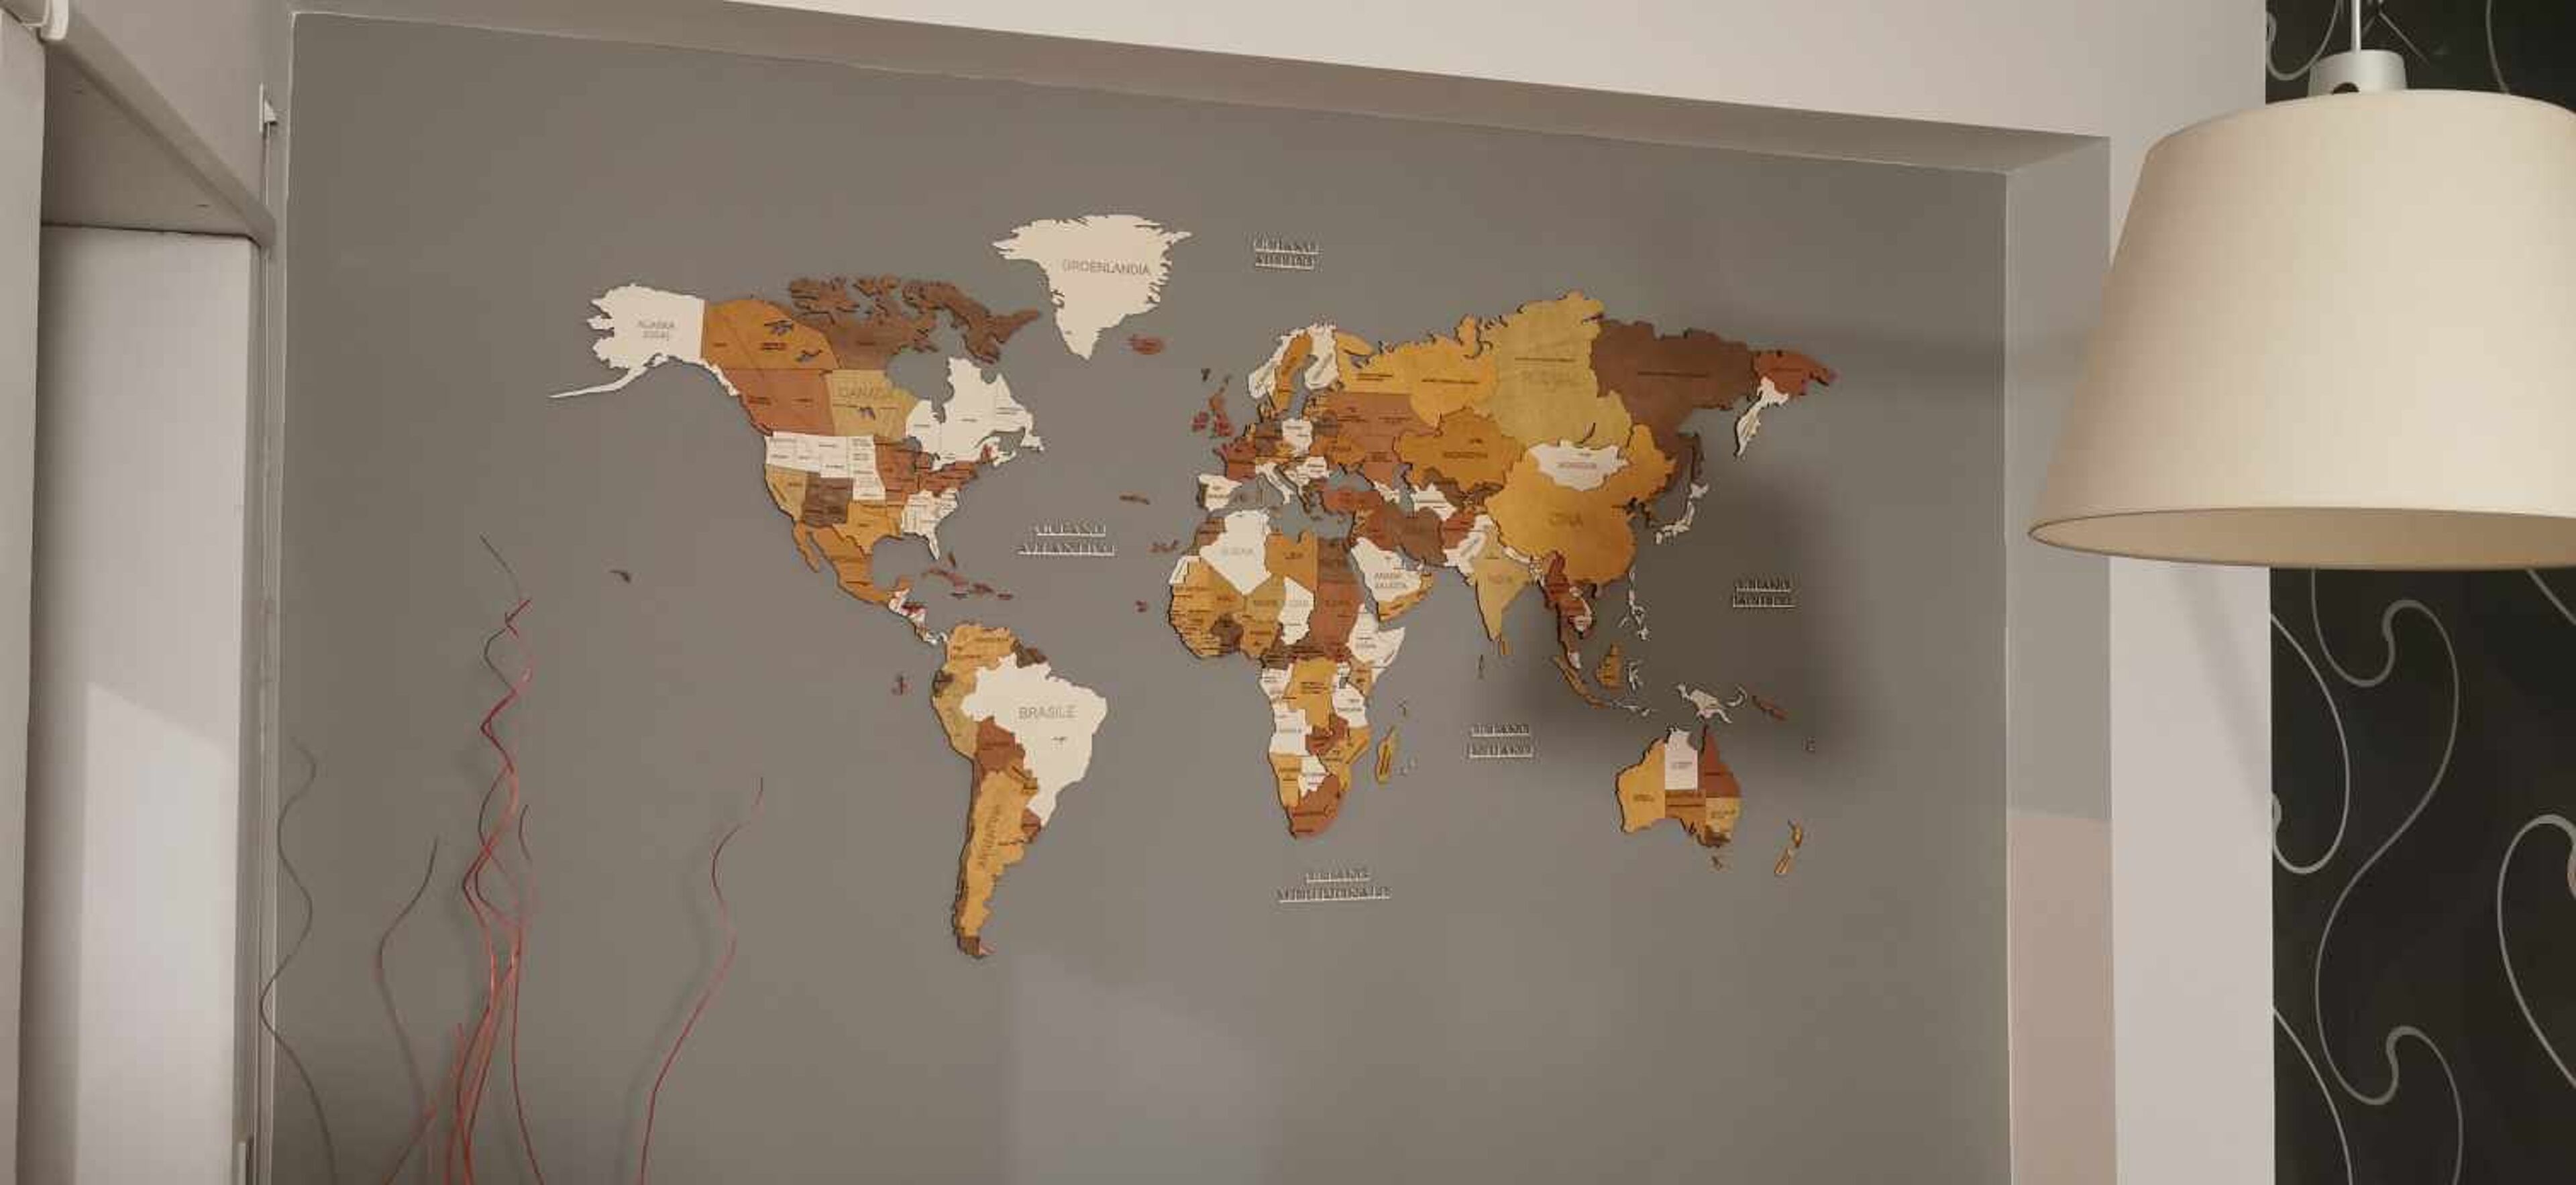 Reseña de Mapa del mundo de madera - imagen de Fabio Bartuccio